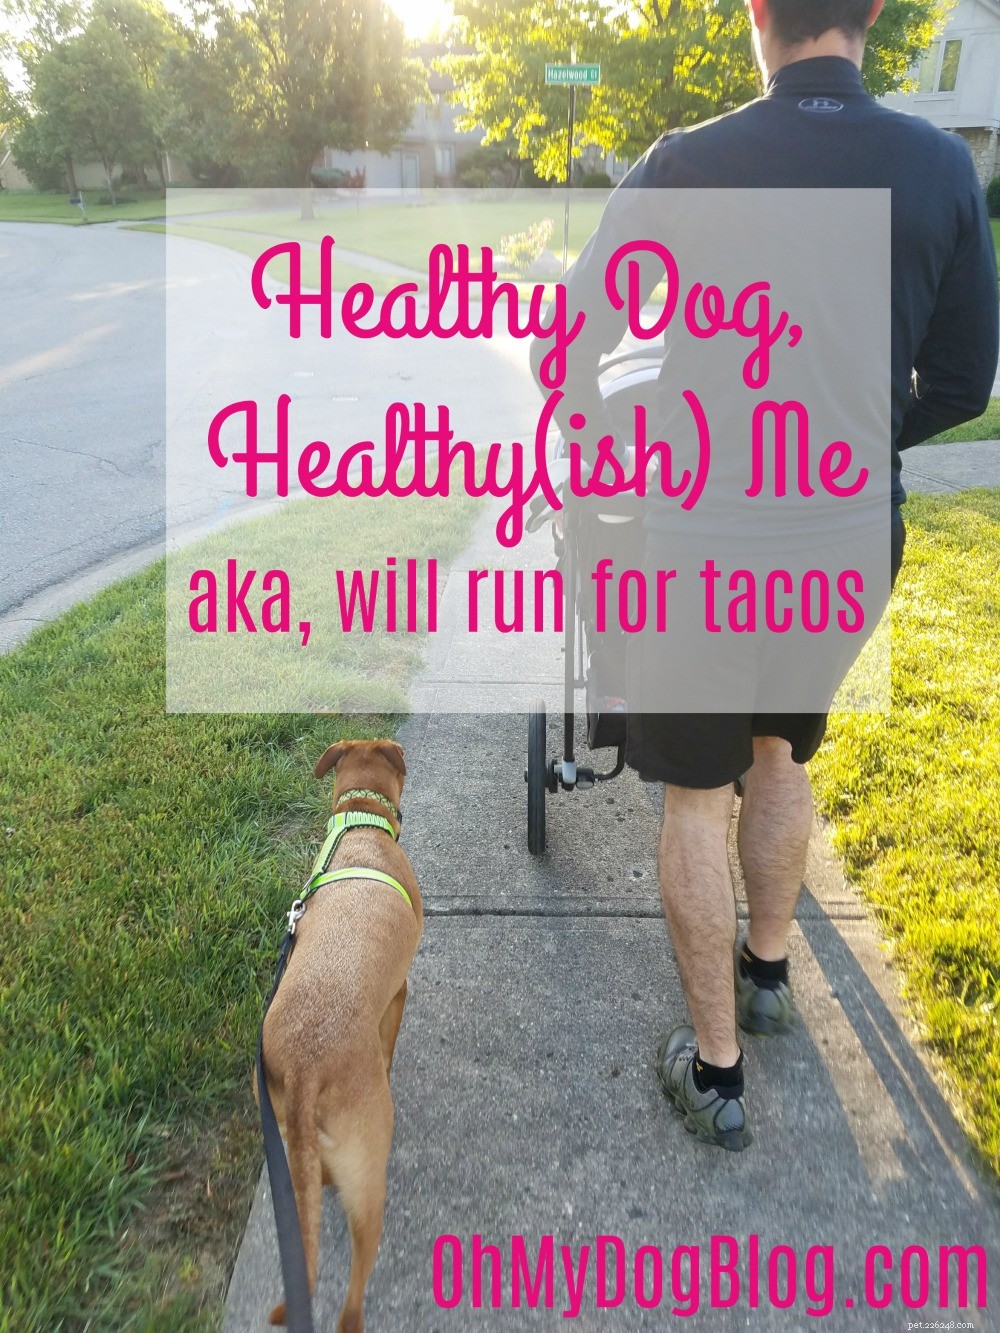 Zdravý pes, Zdravý (ish) Já:Zmínil jsem se, že NESNÁŠÍM běhání? (Alternativní název:Will Run for Tacos)